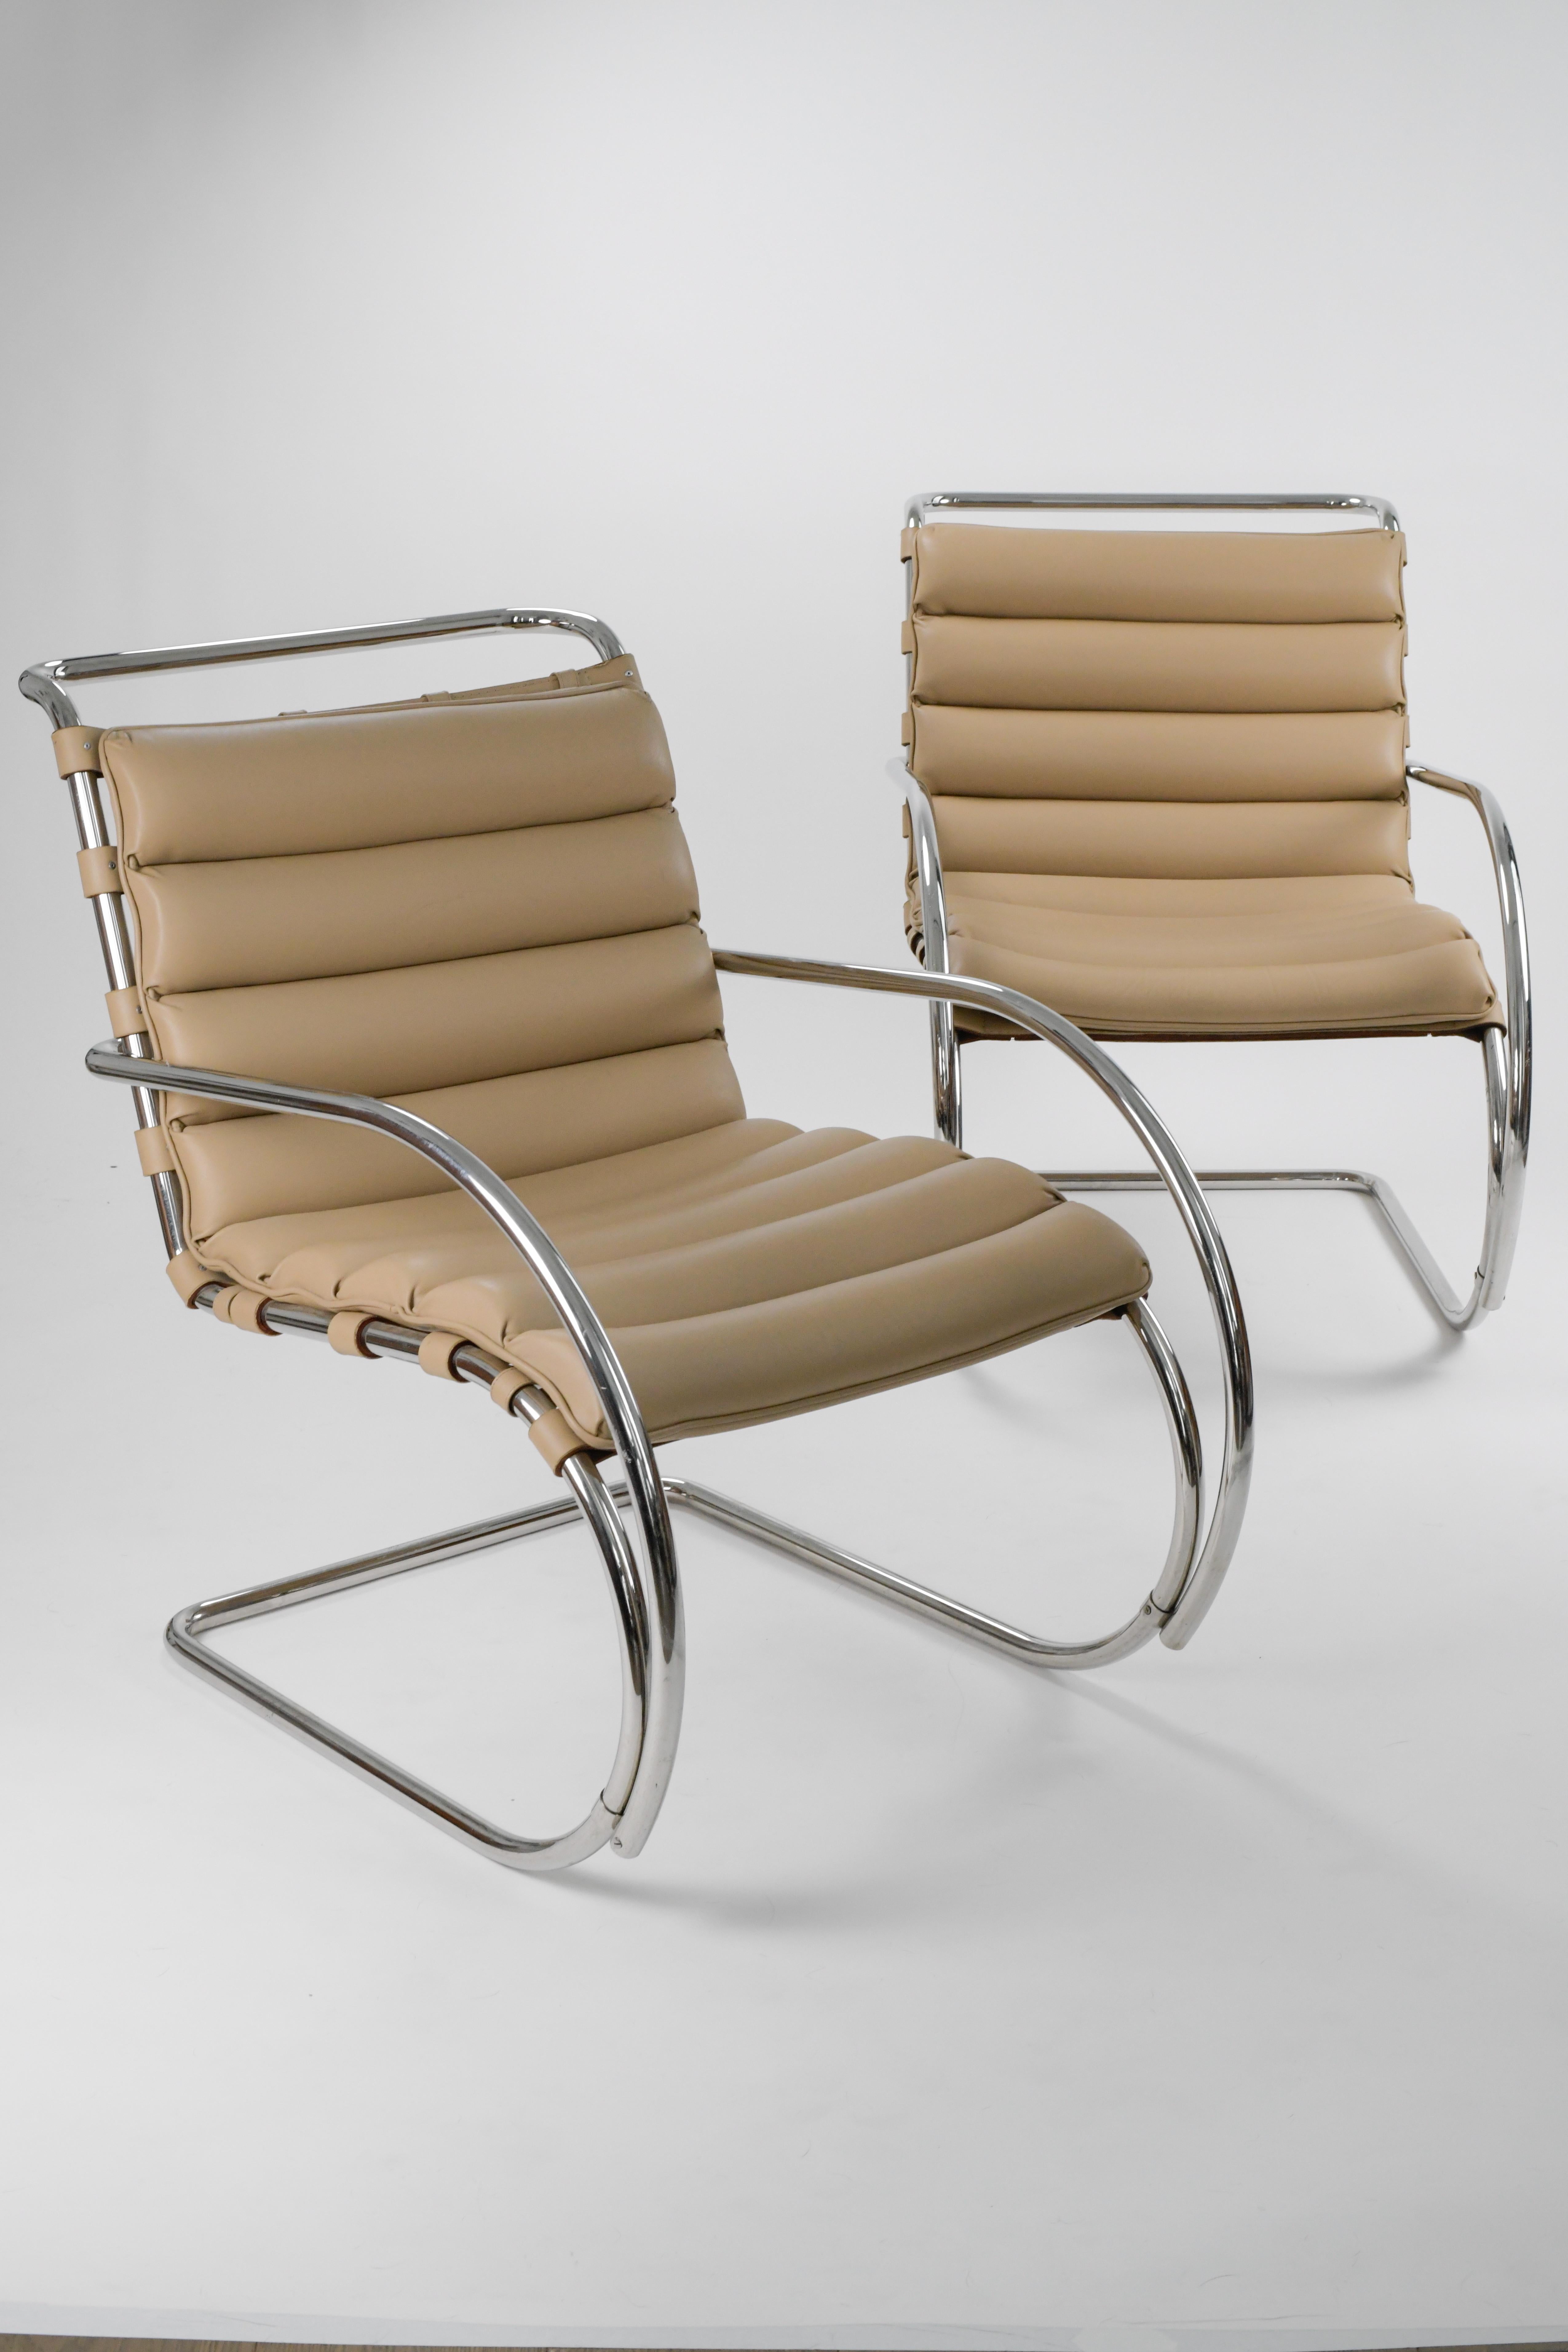 Sehr schönes Paar Mies Van der Rohe MR Lounge Chairs für Knoll in braunem Leder. Wir glauben, dass dieses Paar aus den 1980er Jahren stammt, und in Anbetracht ihres Alters sind sie in einem wirklich guten Vintage-Zustand. Die Lederpads sind intakt